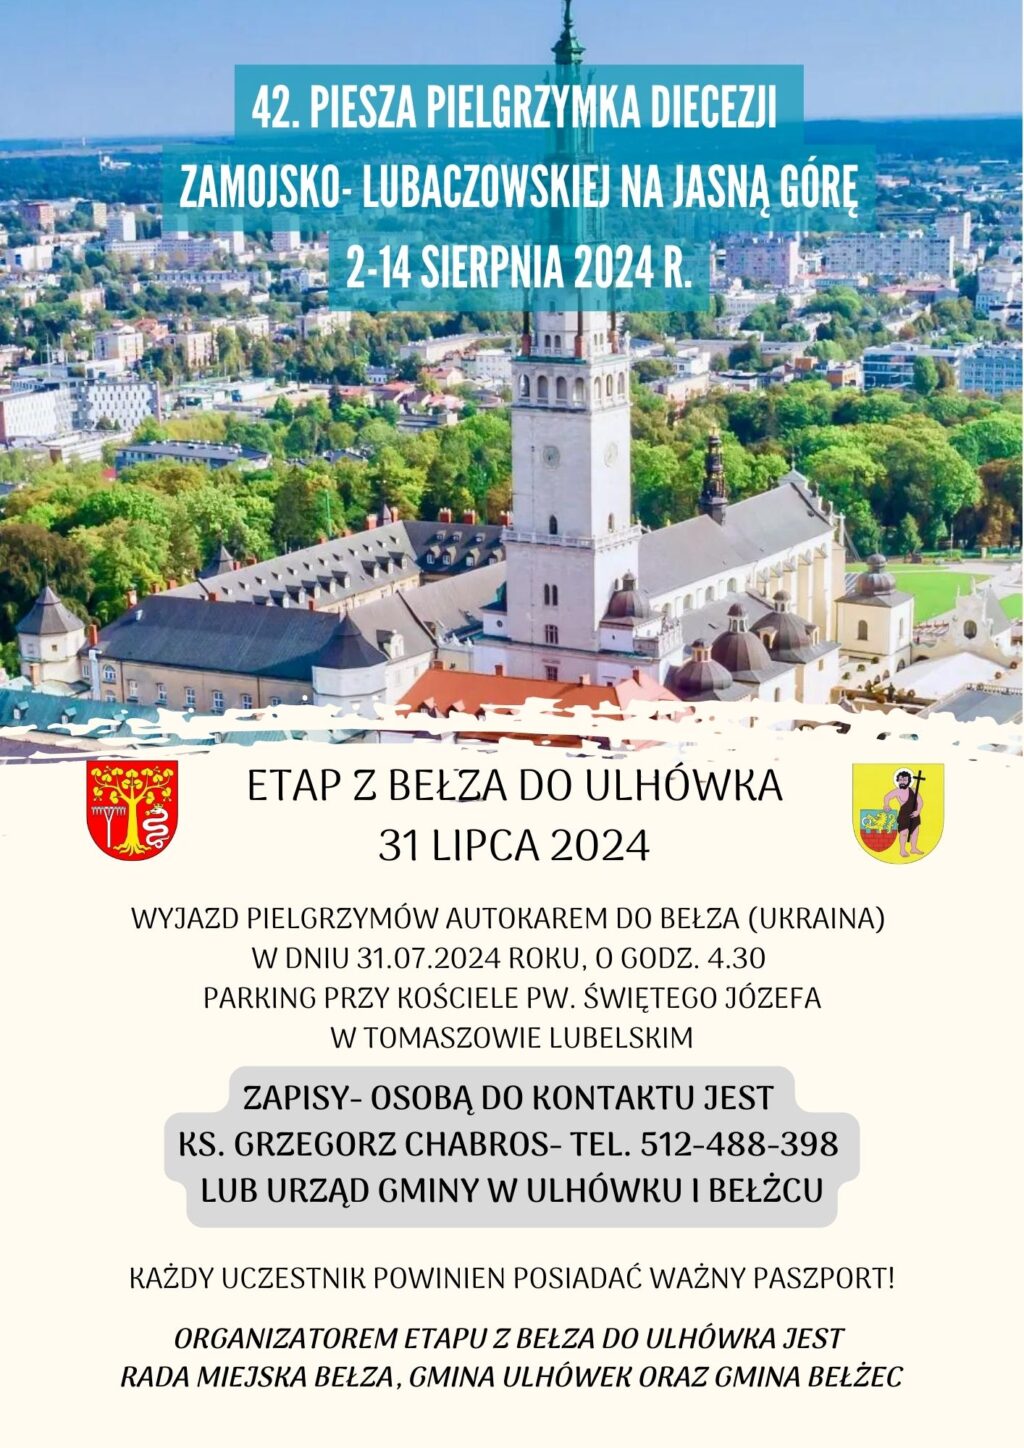 Plakat 42 piesza pielgrzymka diecezji zamojsko-lubaczowskiej na Jasną Górę 2-14 sierpnia 2024r.